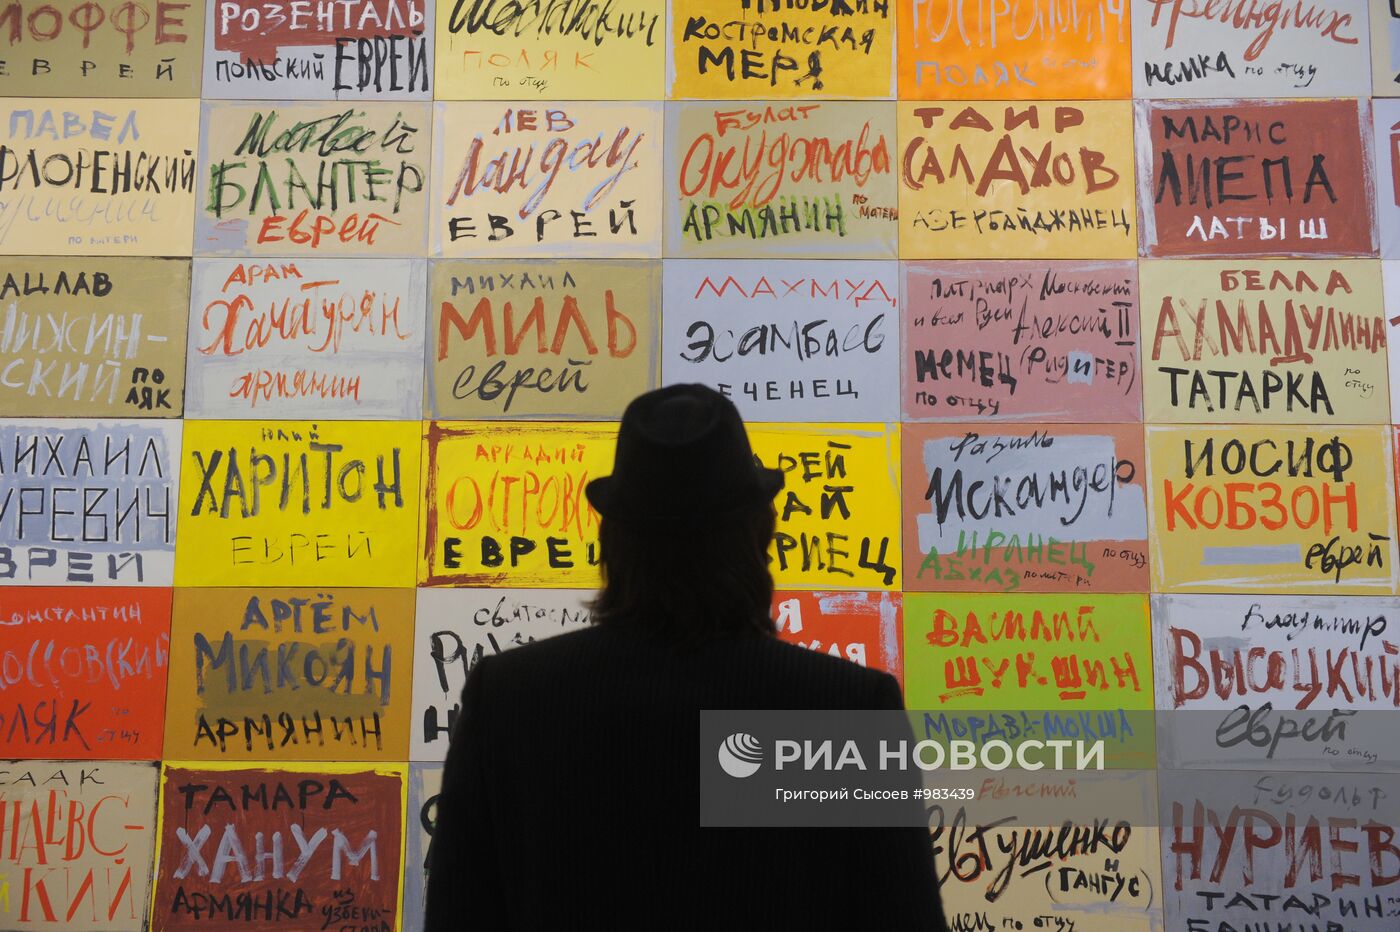 Выставка "Россия для всех" в Московском Доме фотографии